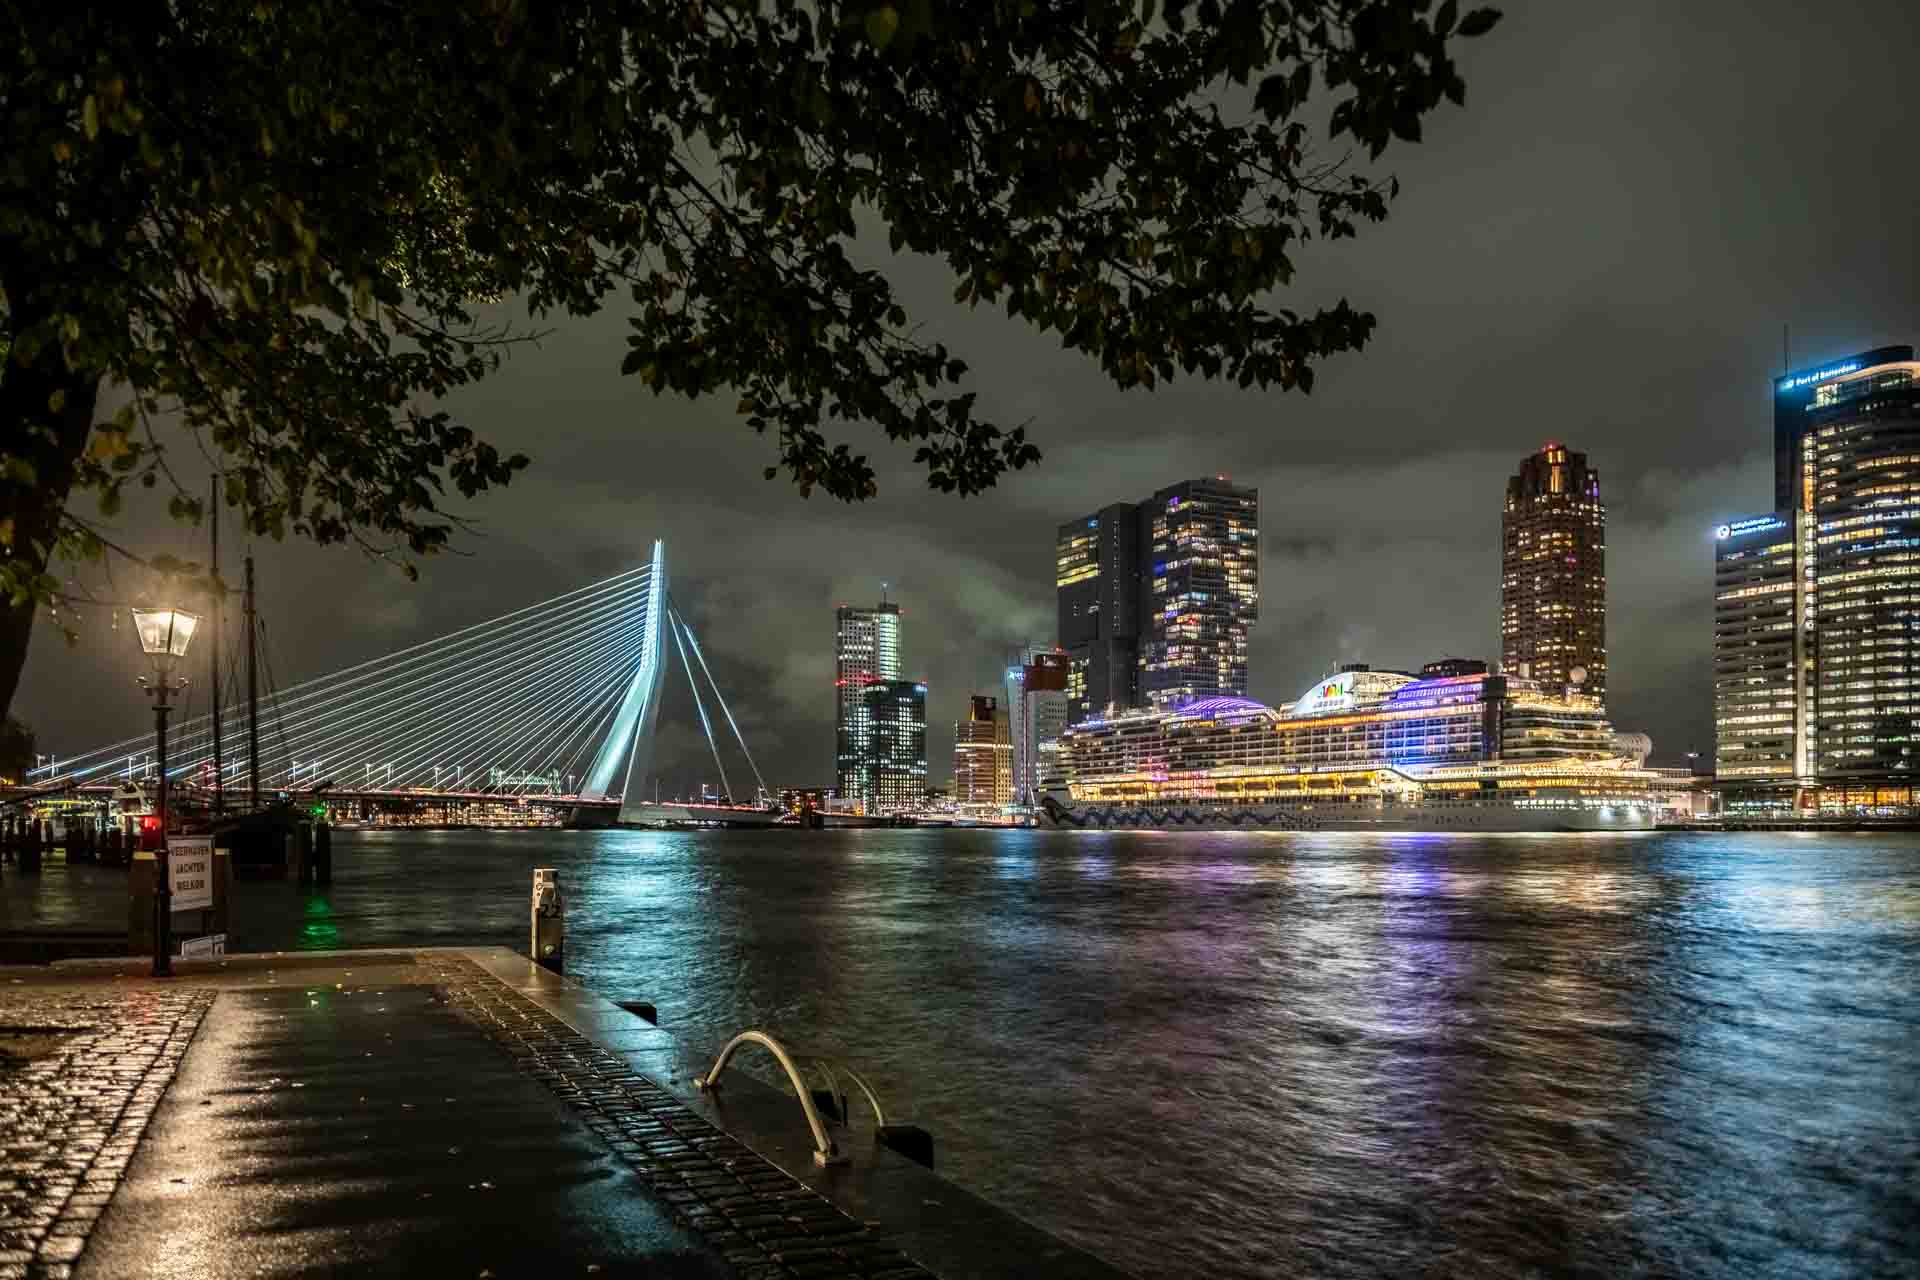 Workshop nachtfotografie Rotterdam Avondfotografie